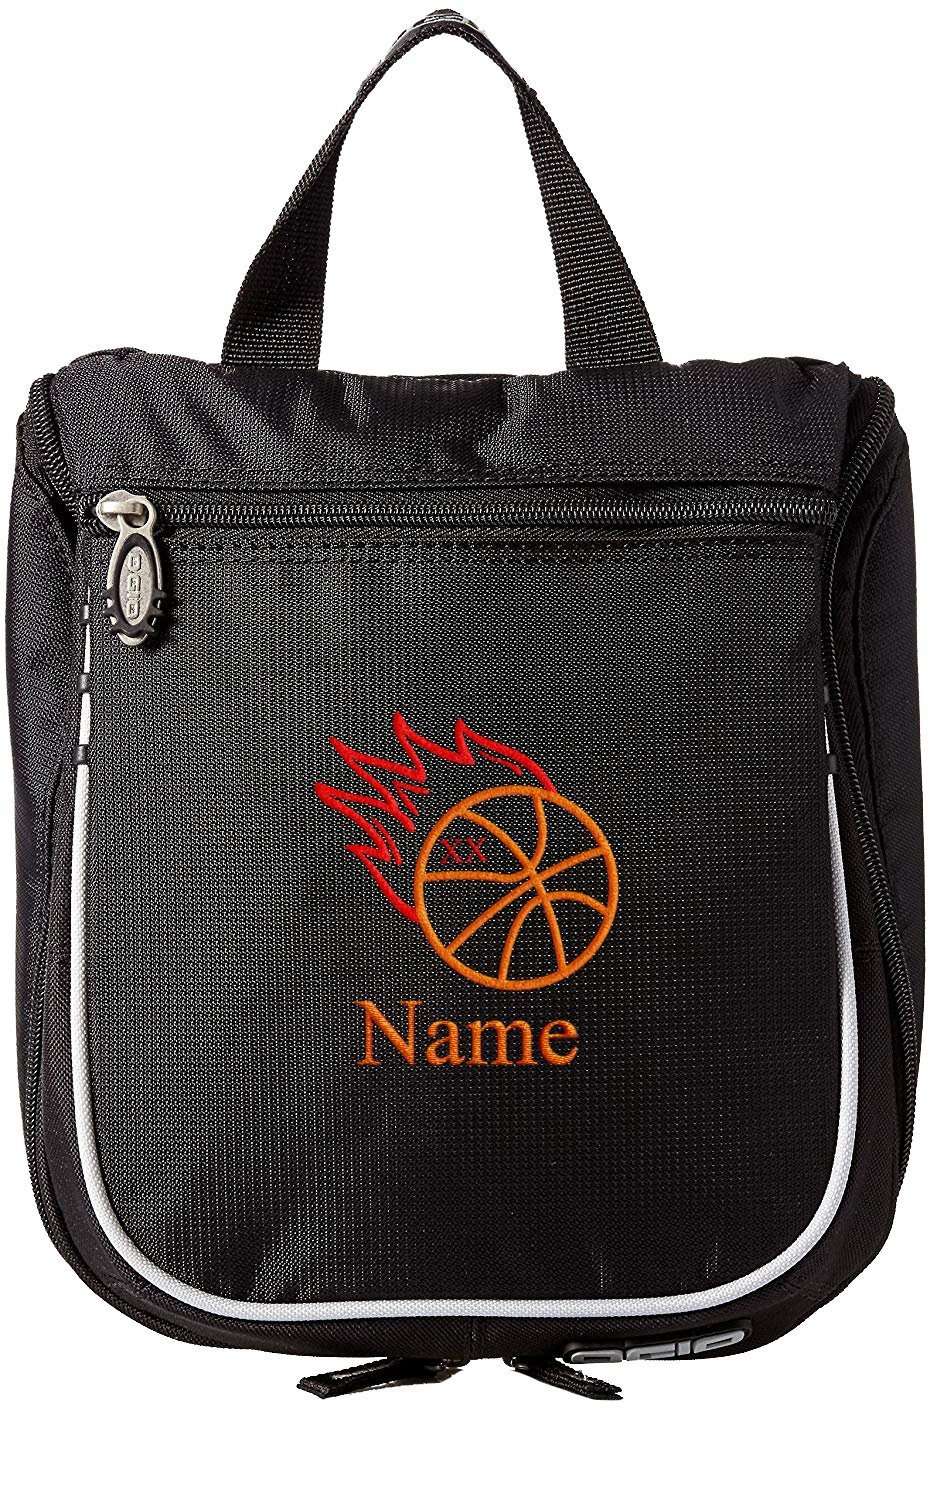 Embroidered Hanging Toiletry Bag – Custom Dopp Kit/Shaving Kit - Basketball - Mato & Hash